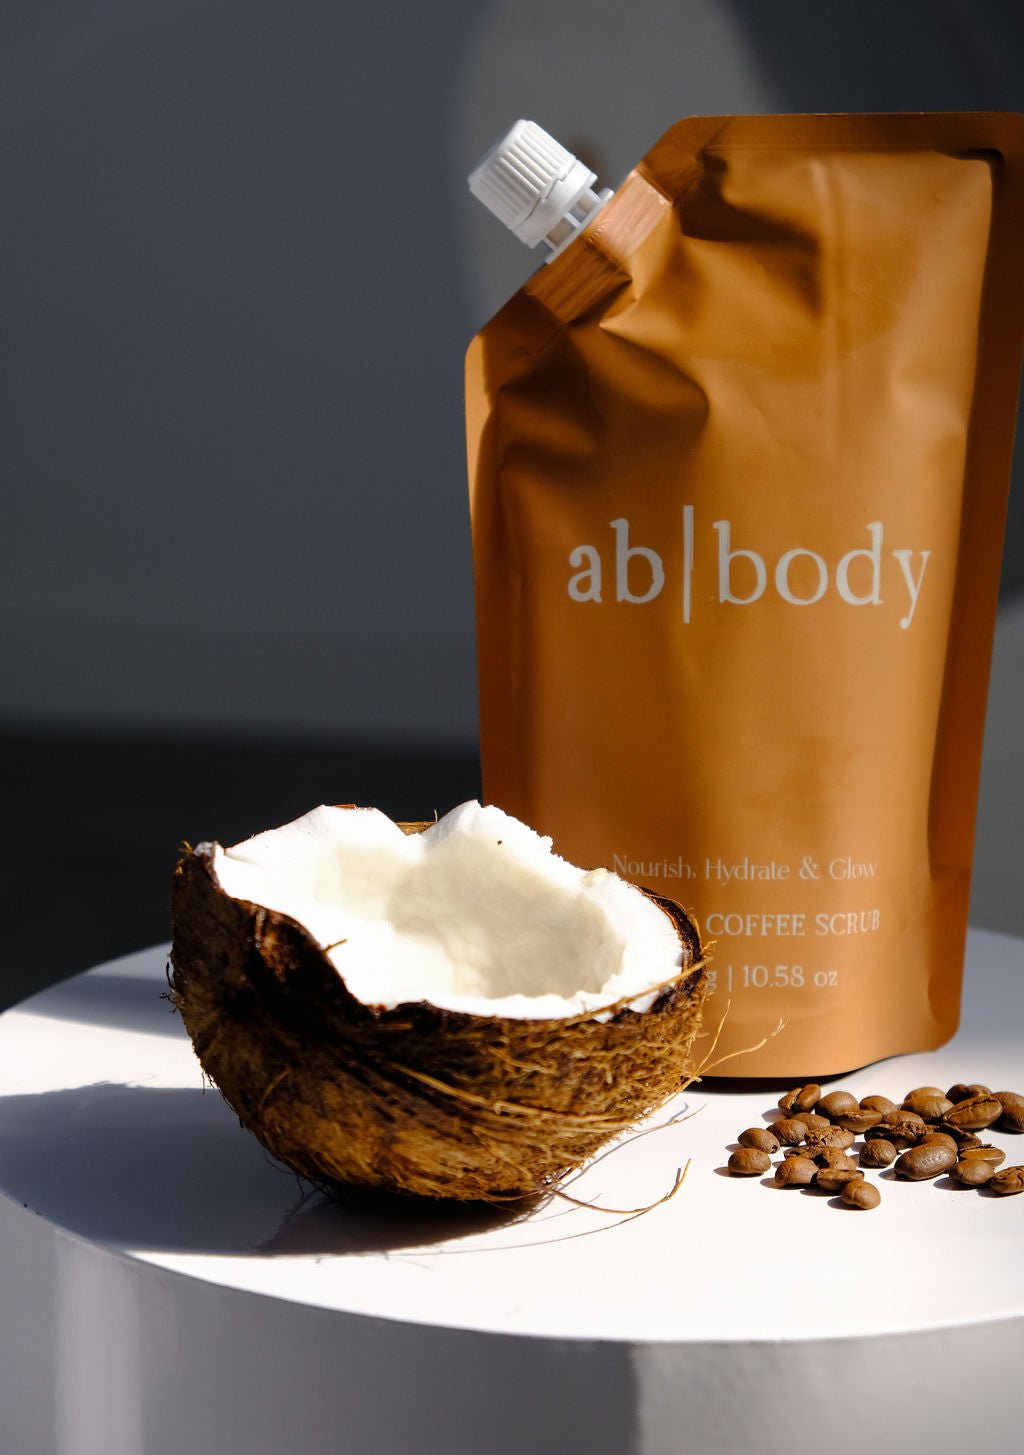 Creamy Coffee Scrub Pouch 300g - ab body